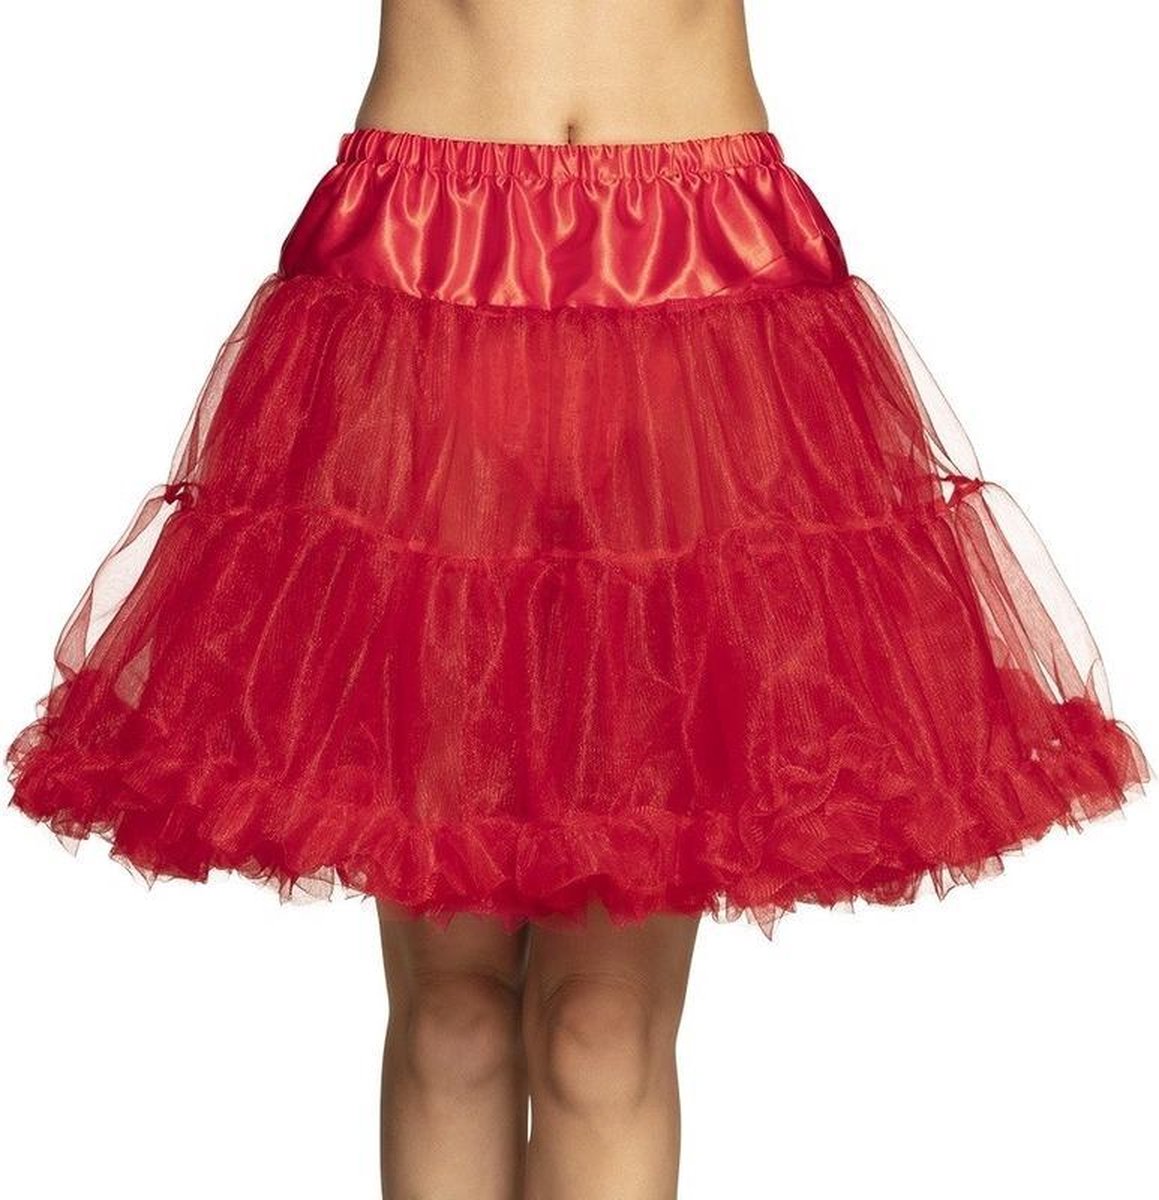 Afbeelding van product Merkloos / Sans marque  Rode verkleed petticoat rok voor dames 45 cm - rode verkleedkleding rokken  - maat One size